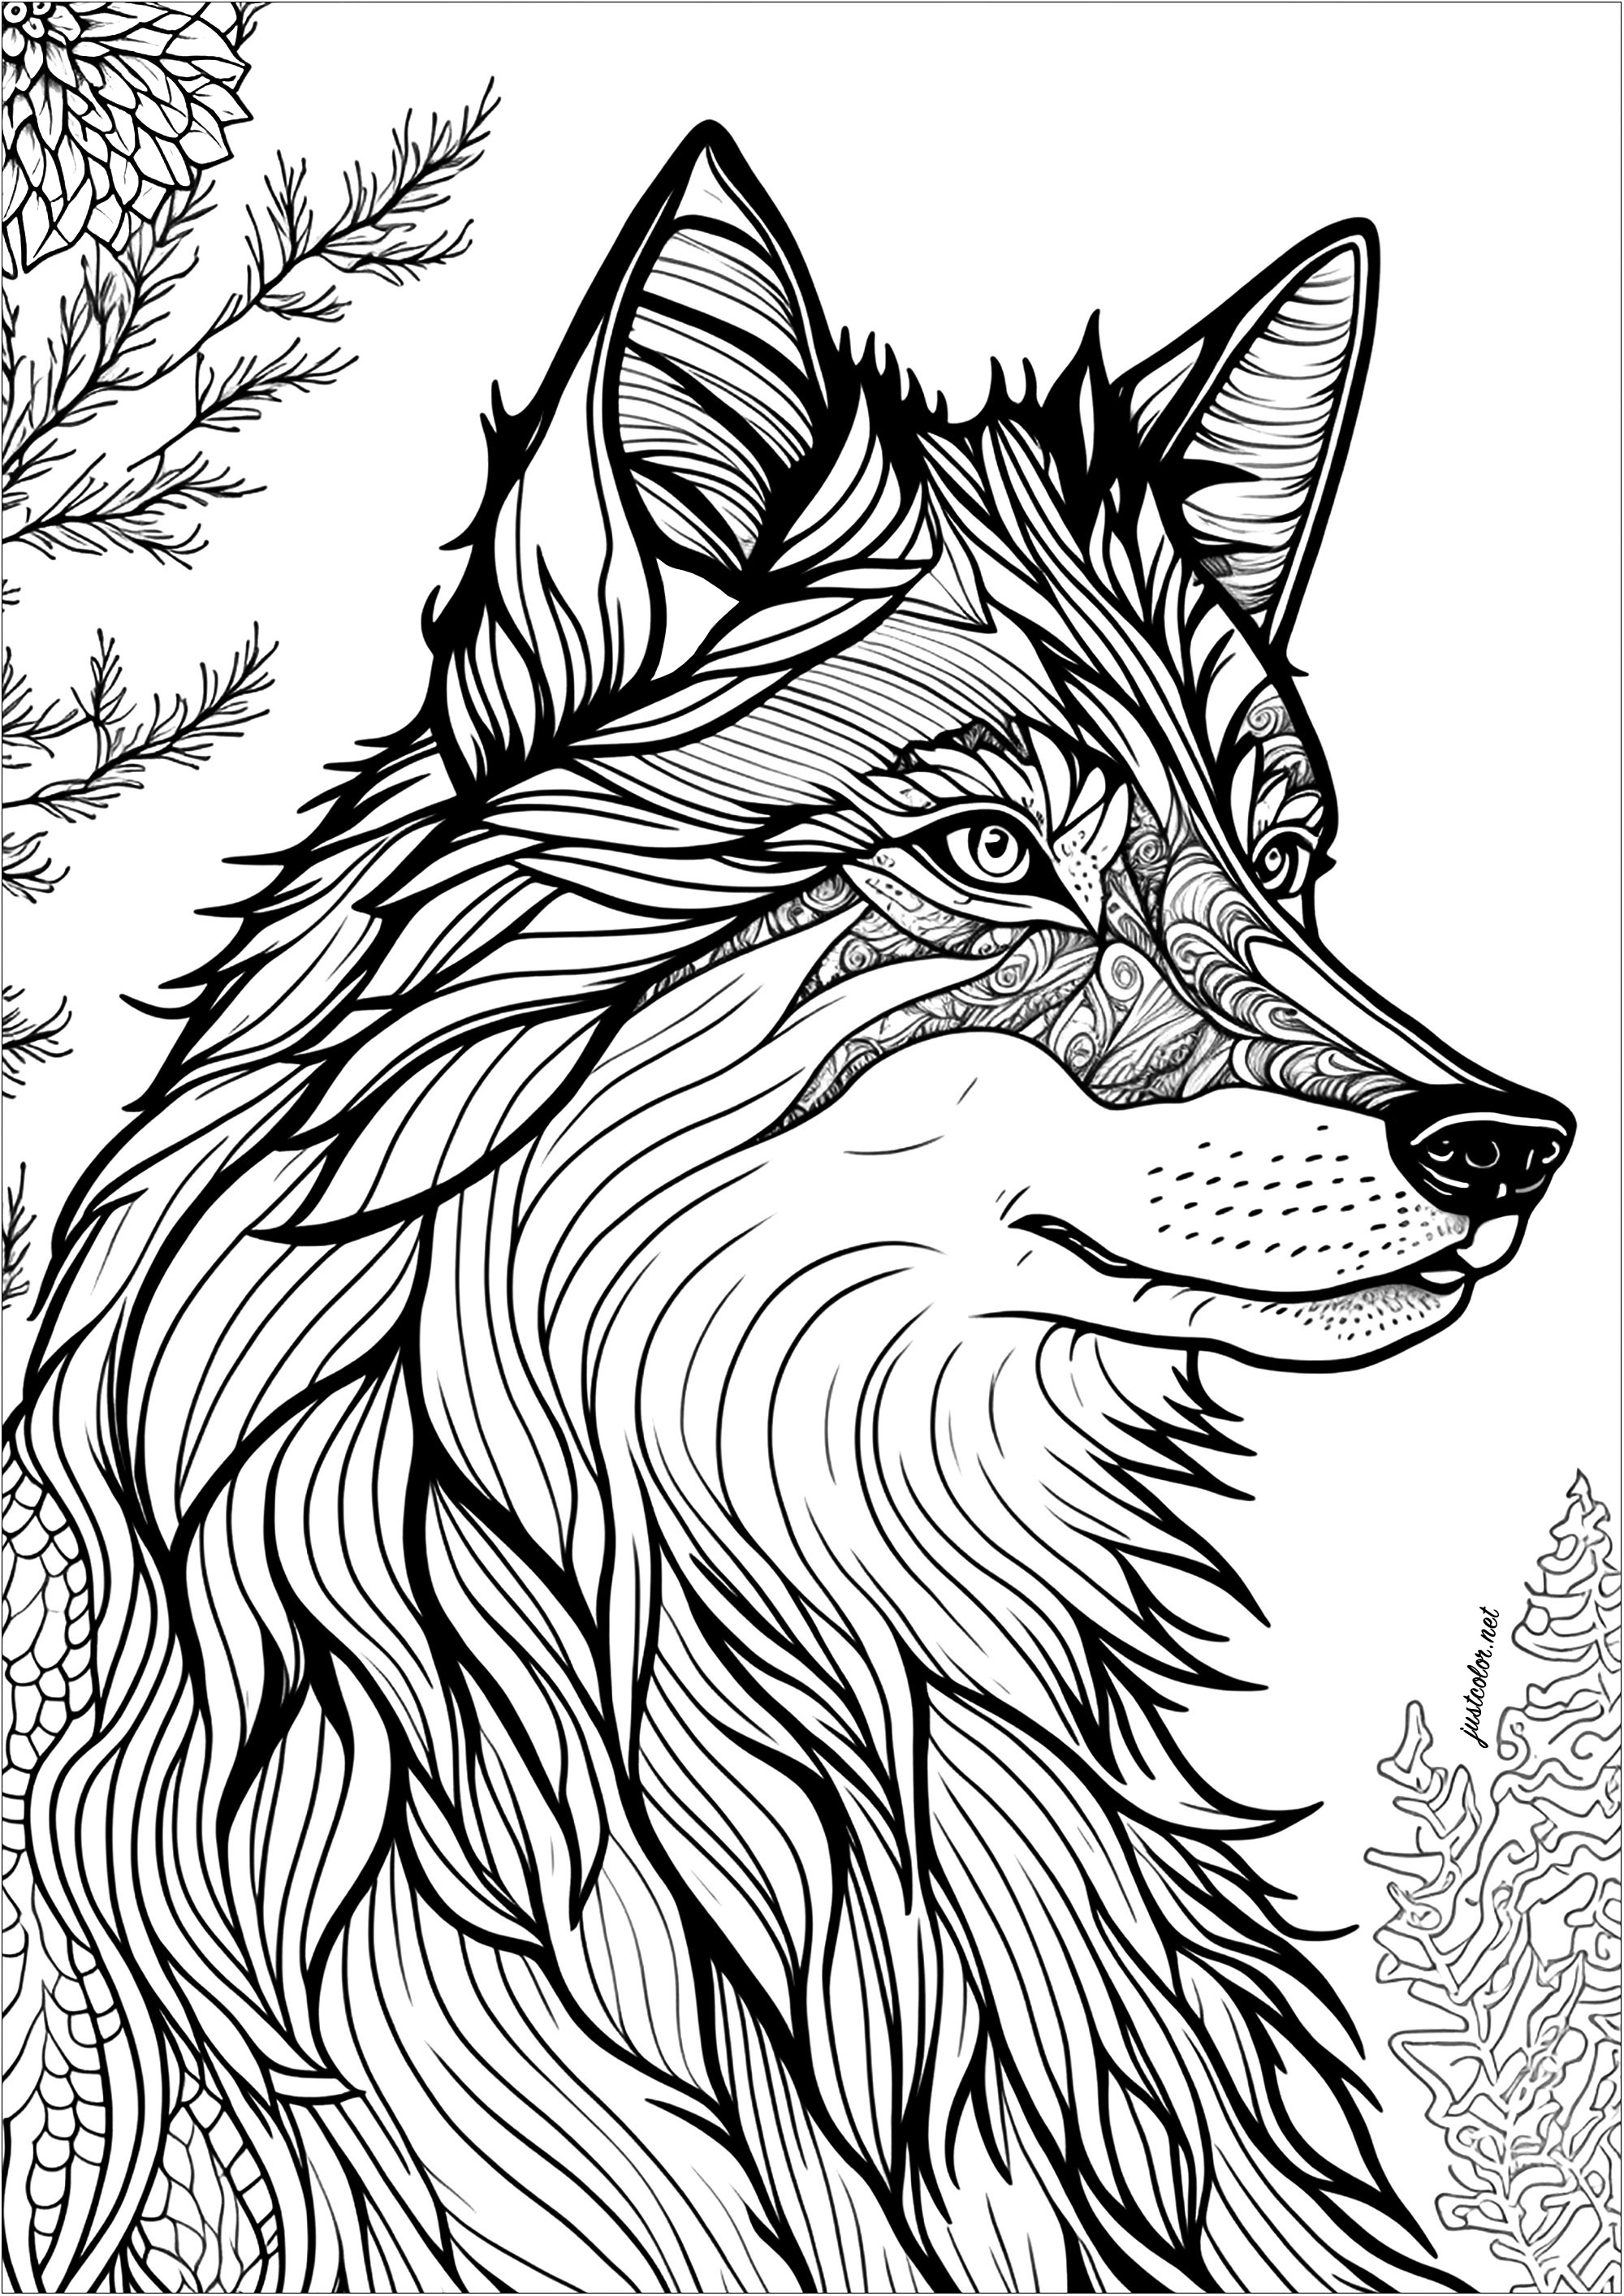 Colorear un lobo, visto de perfil. Los ojos de este lobo son particularmente expresivos, su mirada cautivadora y misteriosa.